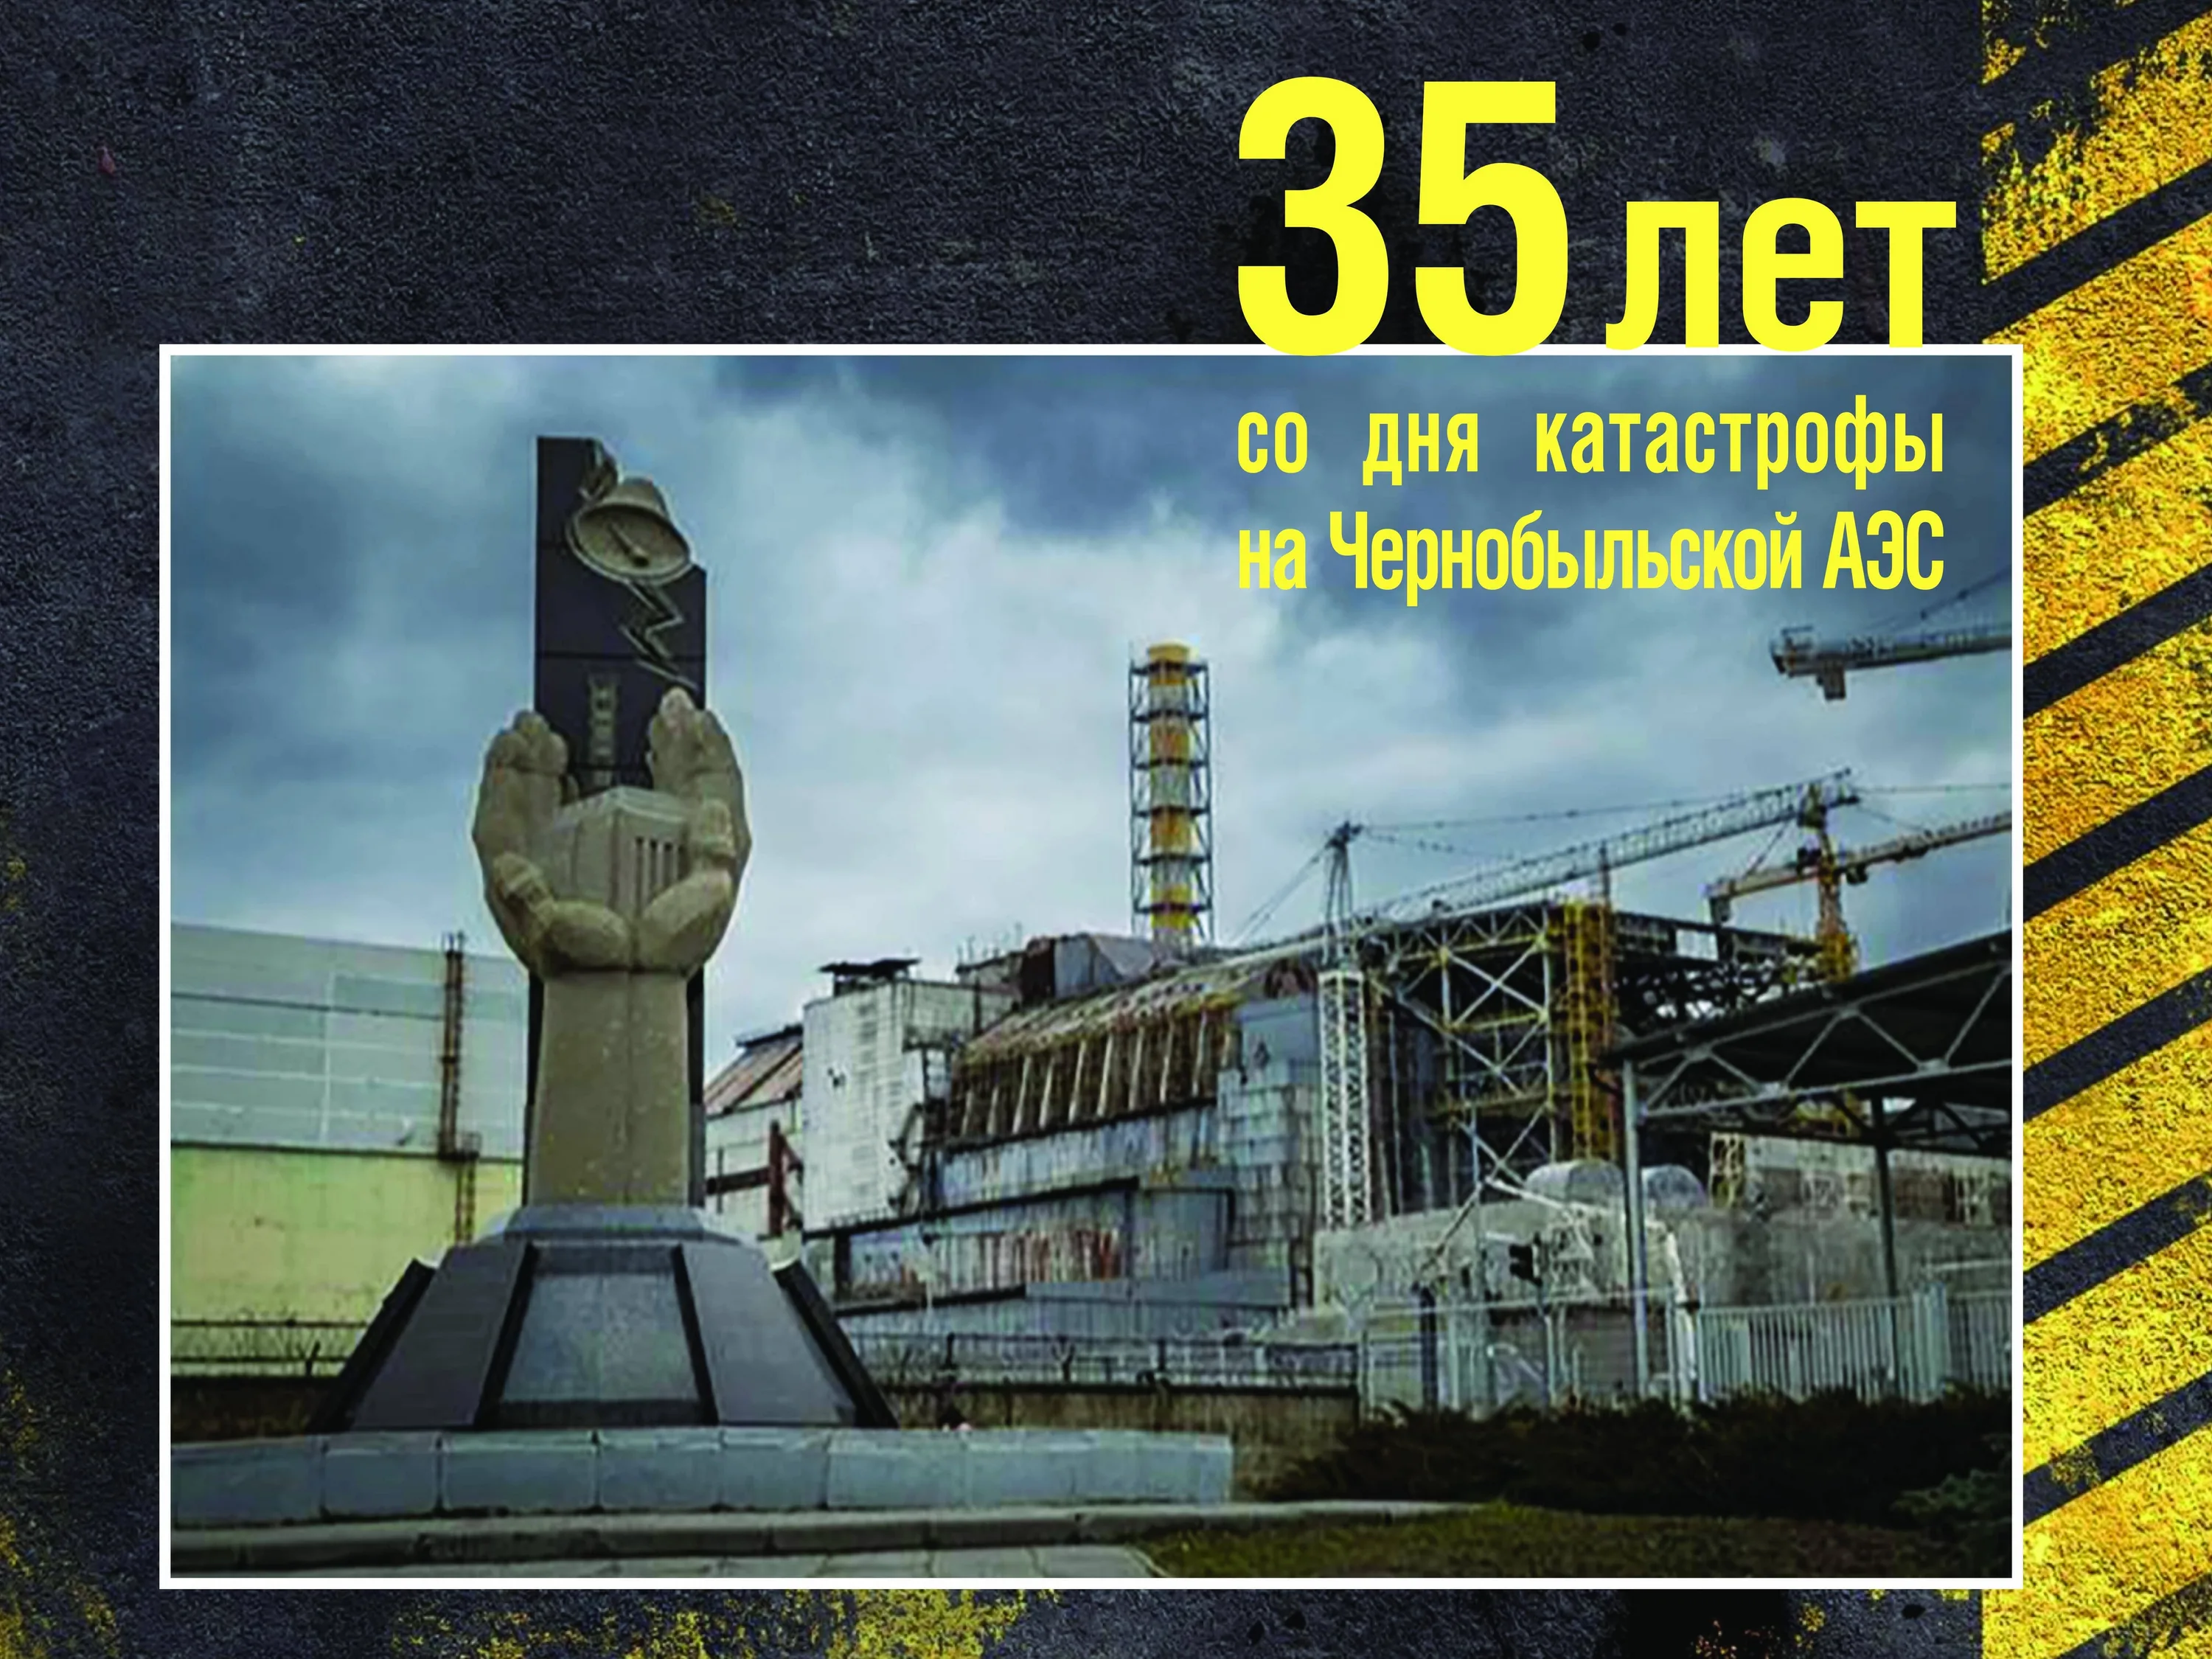 26 апреля день чернобыля. 26 Апреля 1986 день памяти Чернобыльской АЭС. Чернобыль взрыв атомной станции 1986. ЧАЭС 26.04.1986. 35 Лет со дня аварии на Чернобыльской АЭС.